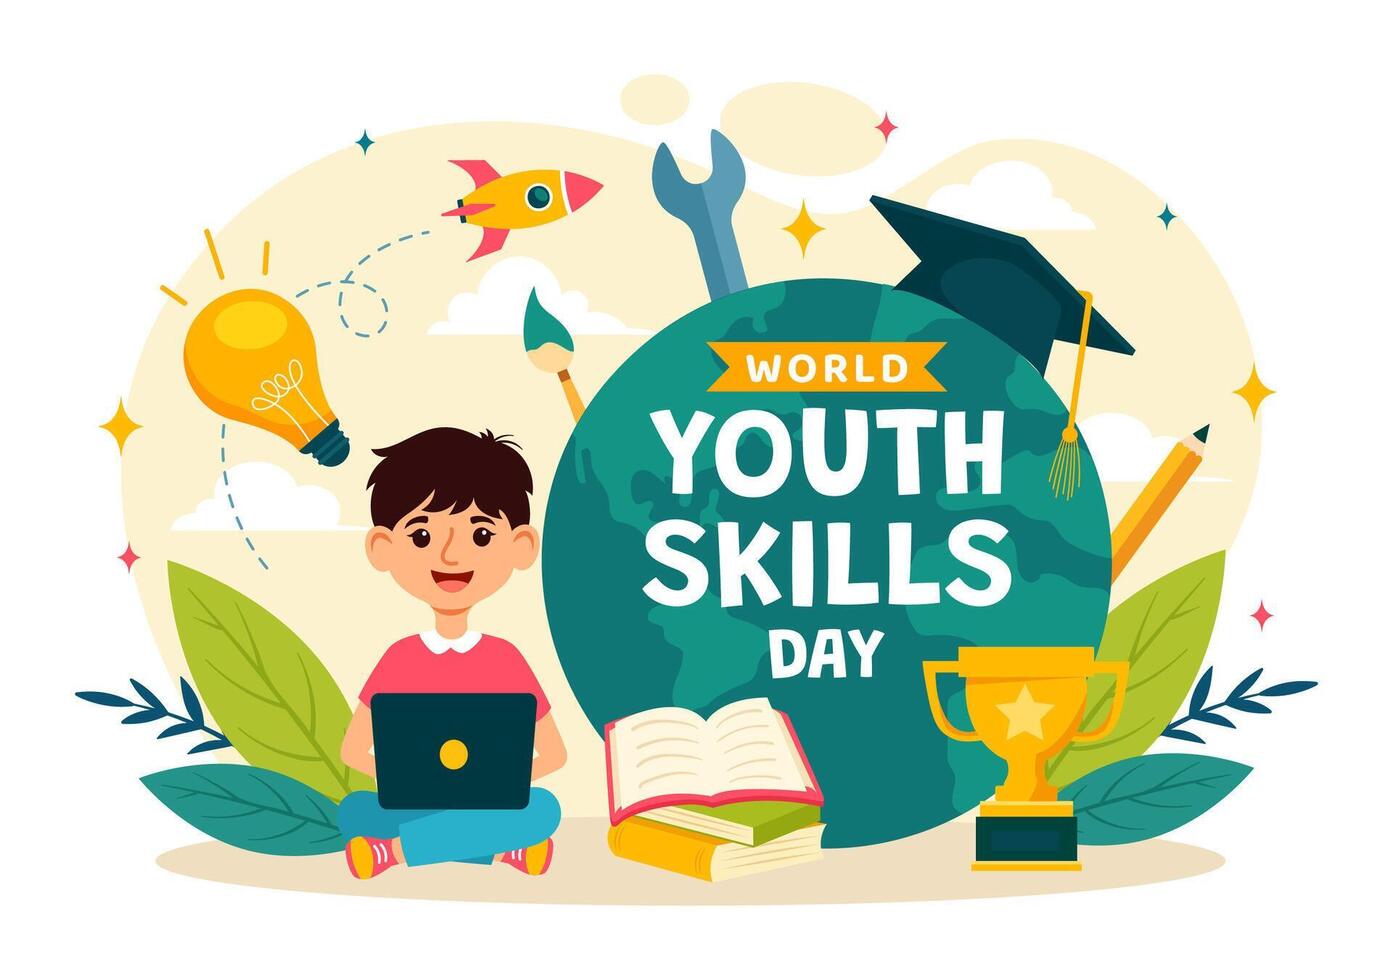 wereld jeugd vaardigheden dag illustratie van mensen met vaardigheden voor divers werk en ondernemerschap in vlak kinderen tekenfilm achtergrond ontwerp vector